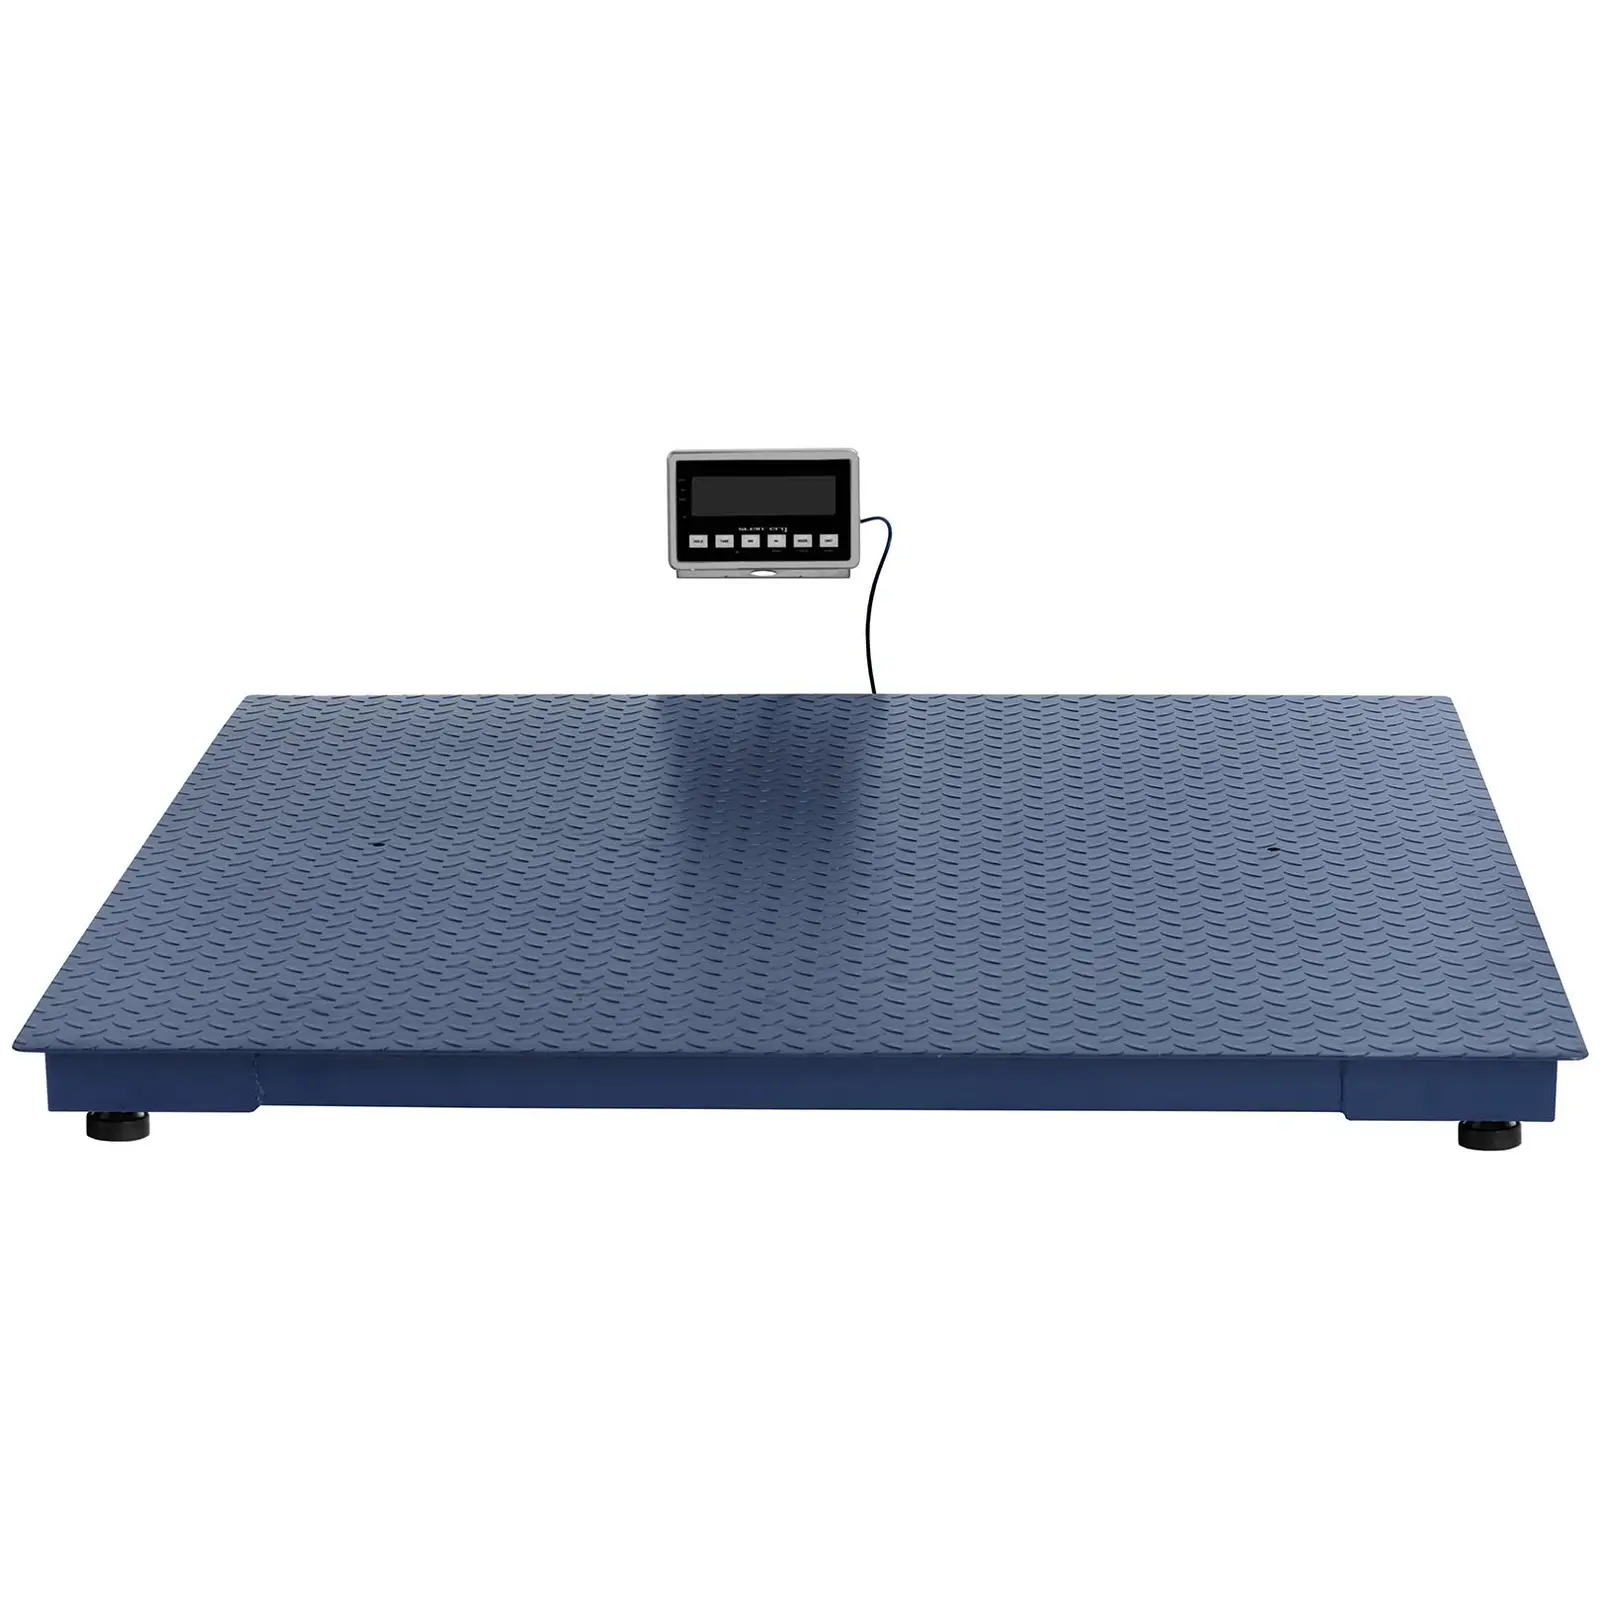 Floor Scale - 5000 kg / 2 kg - 1500 x 1500 mm - LCD